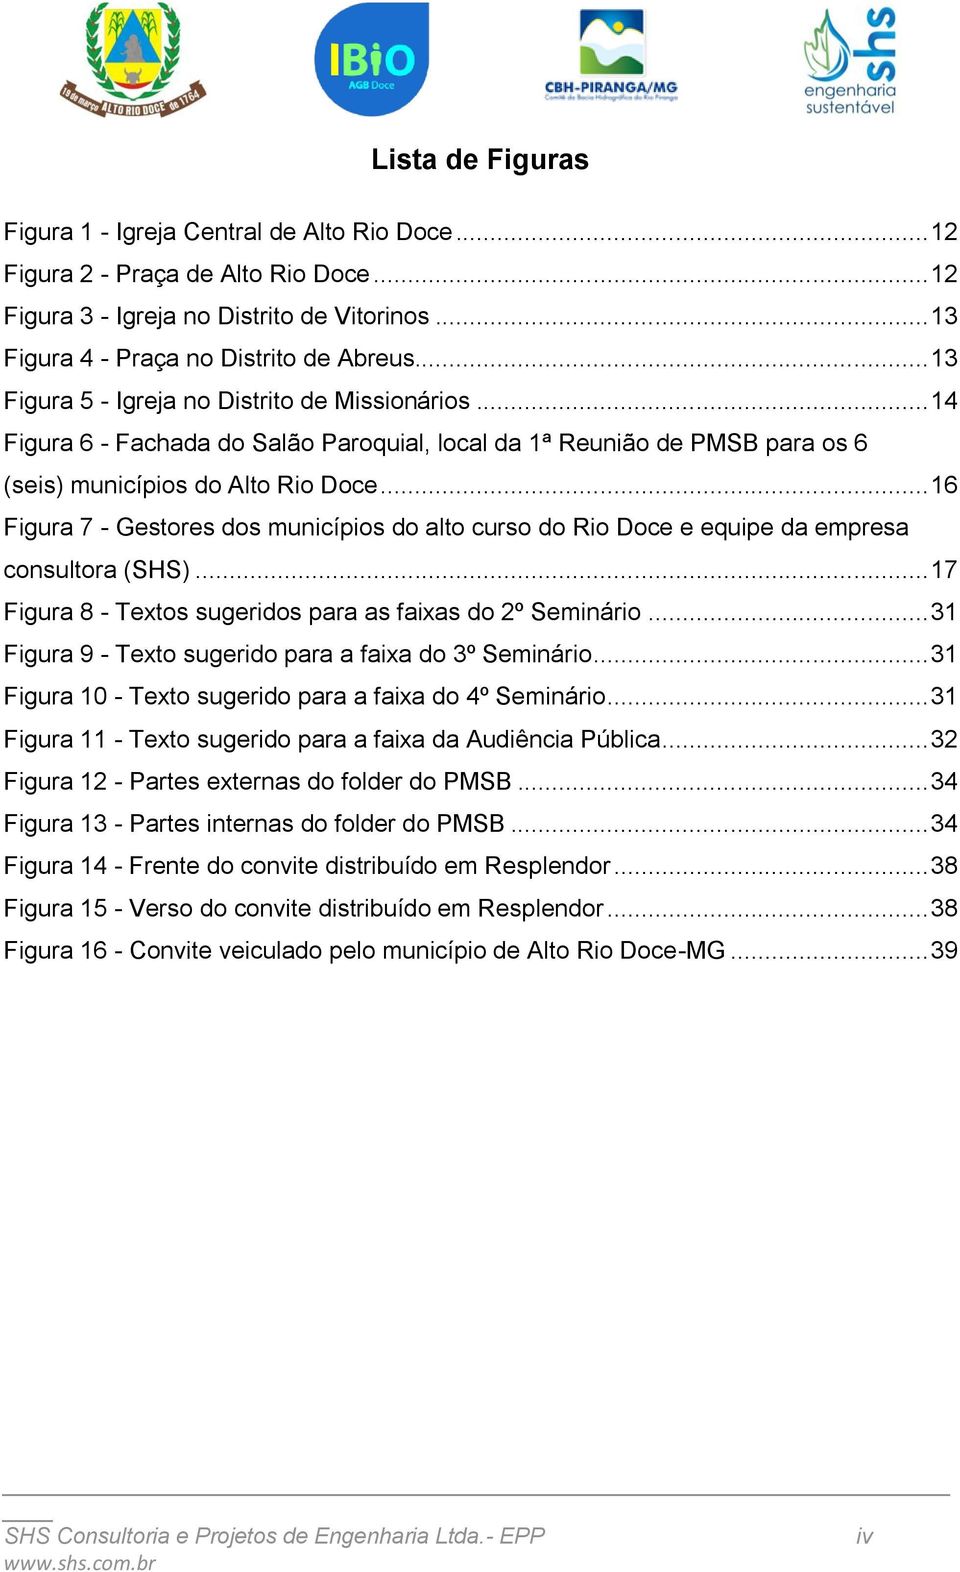 .. 16 Figura 7 - Gestores dos municípios do alto curso do Rio Doce e equipe da empresa consultora (SHS)... 17 Figura 8 - Textos sugeridos para as faixas do 2º Seminário.